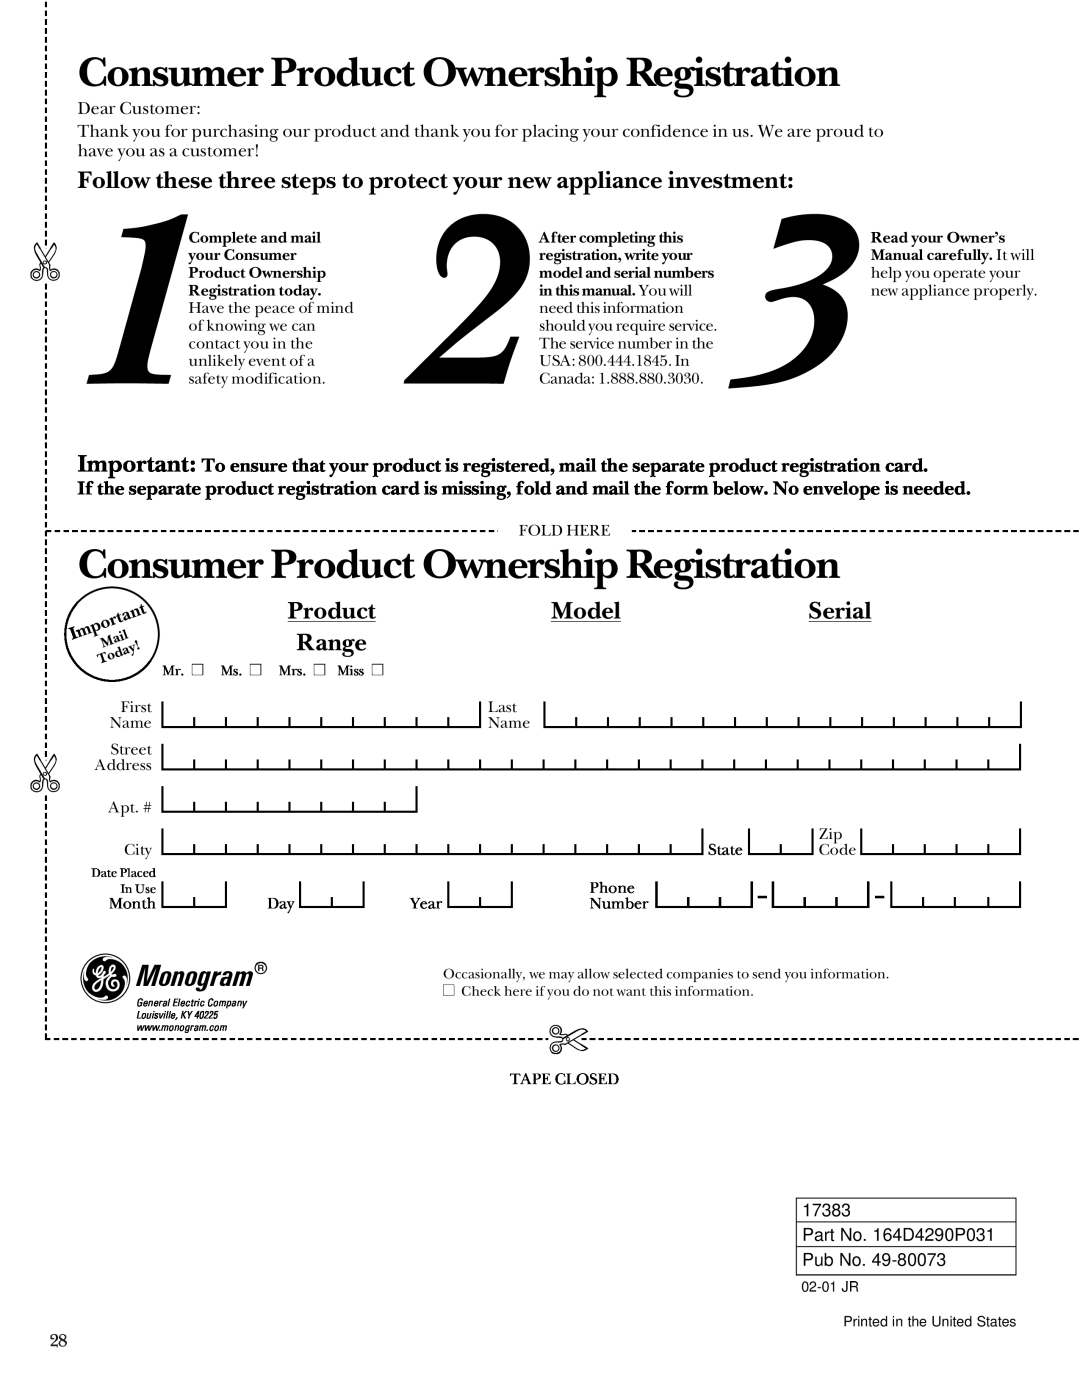 GE Monogram 164D4290P031 owner manual Consumer Product Ownership Registration, Model, Serial, Range, Monogram 